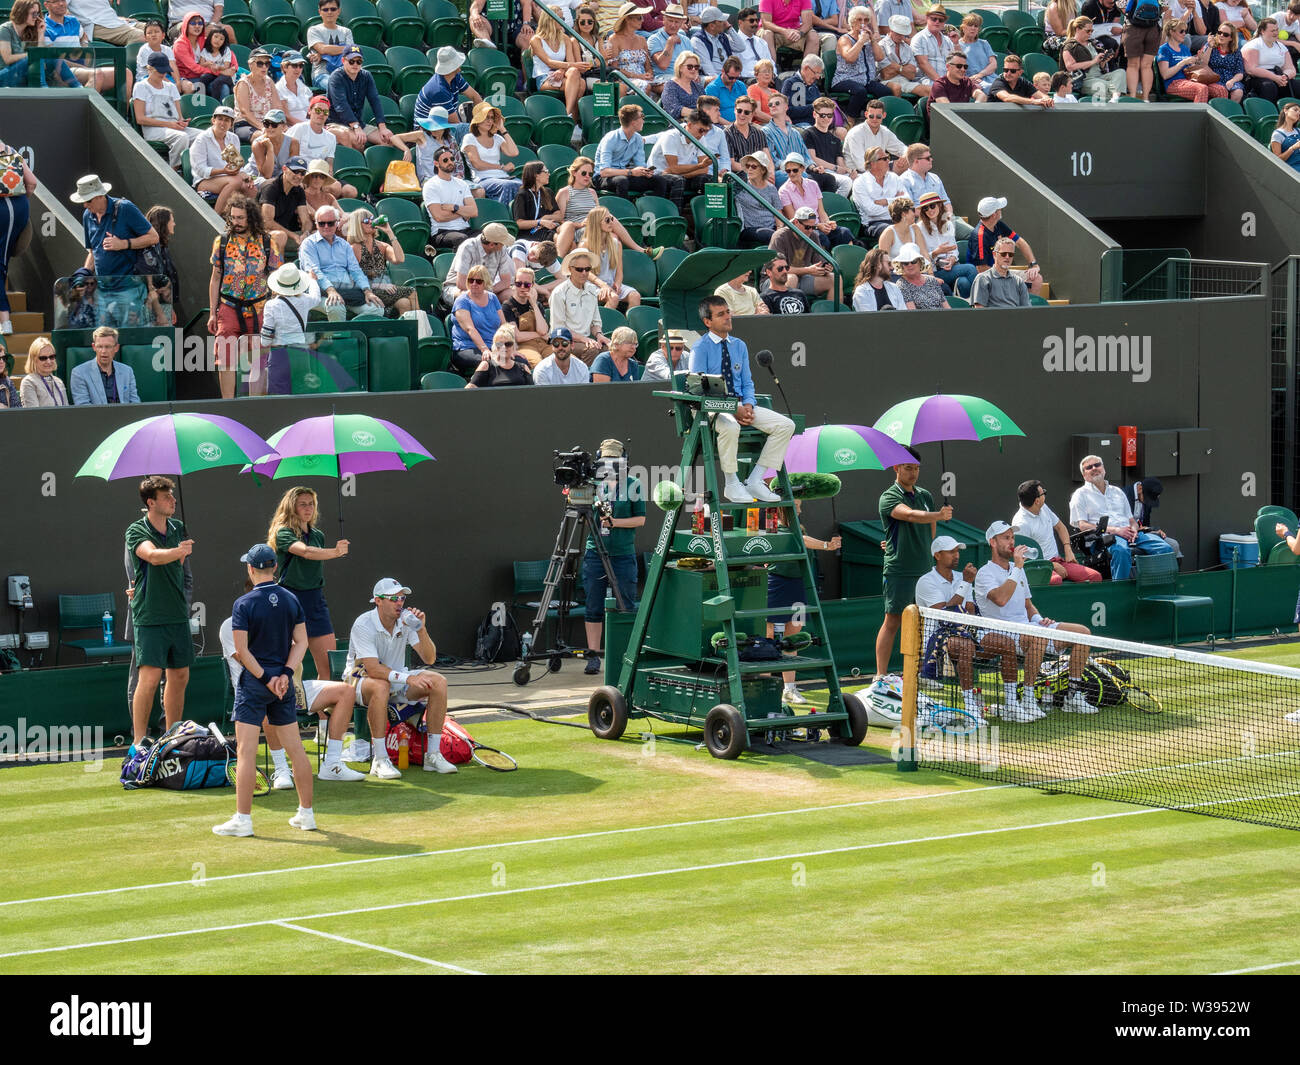 Hommes Double partenaires faisant une pause entre les jeux au tournoi de tennis de Wimbledon, Londres, Angleterre Banque D'Images